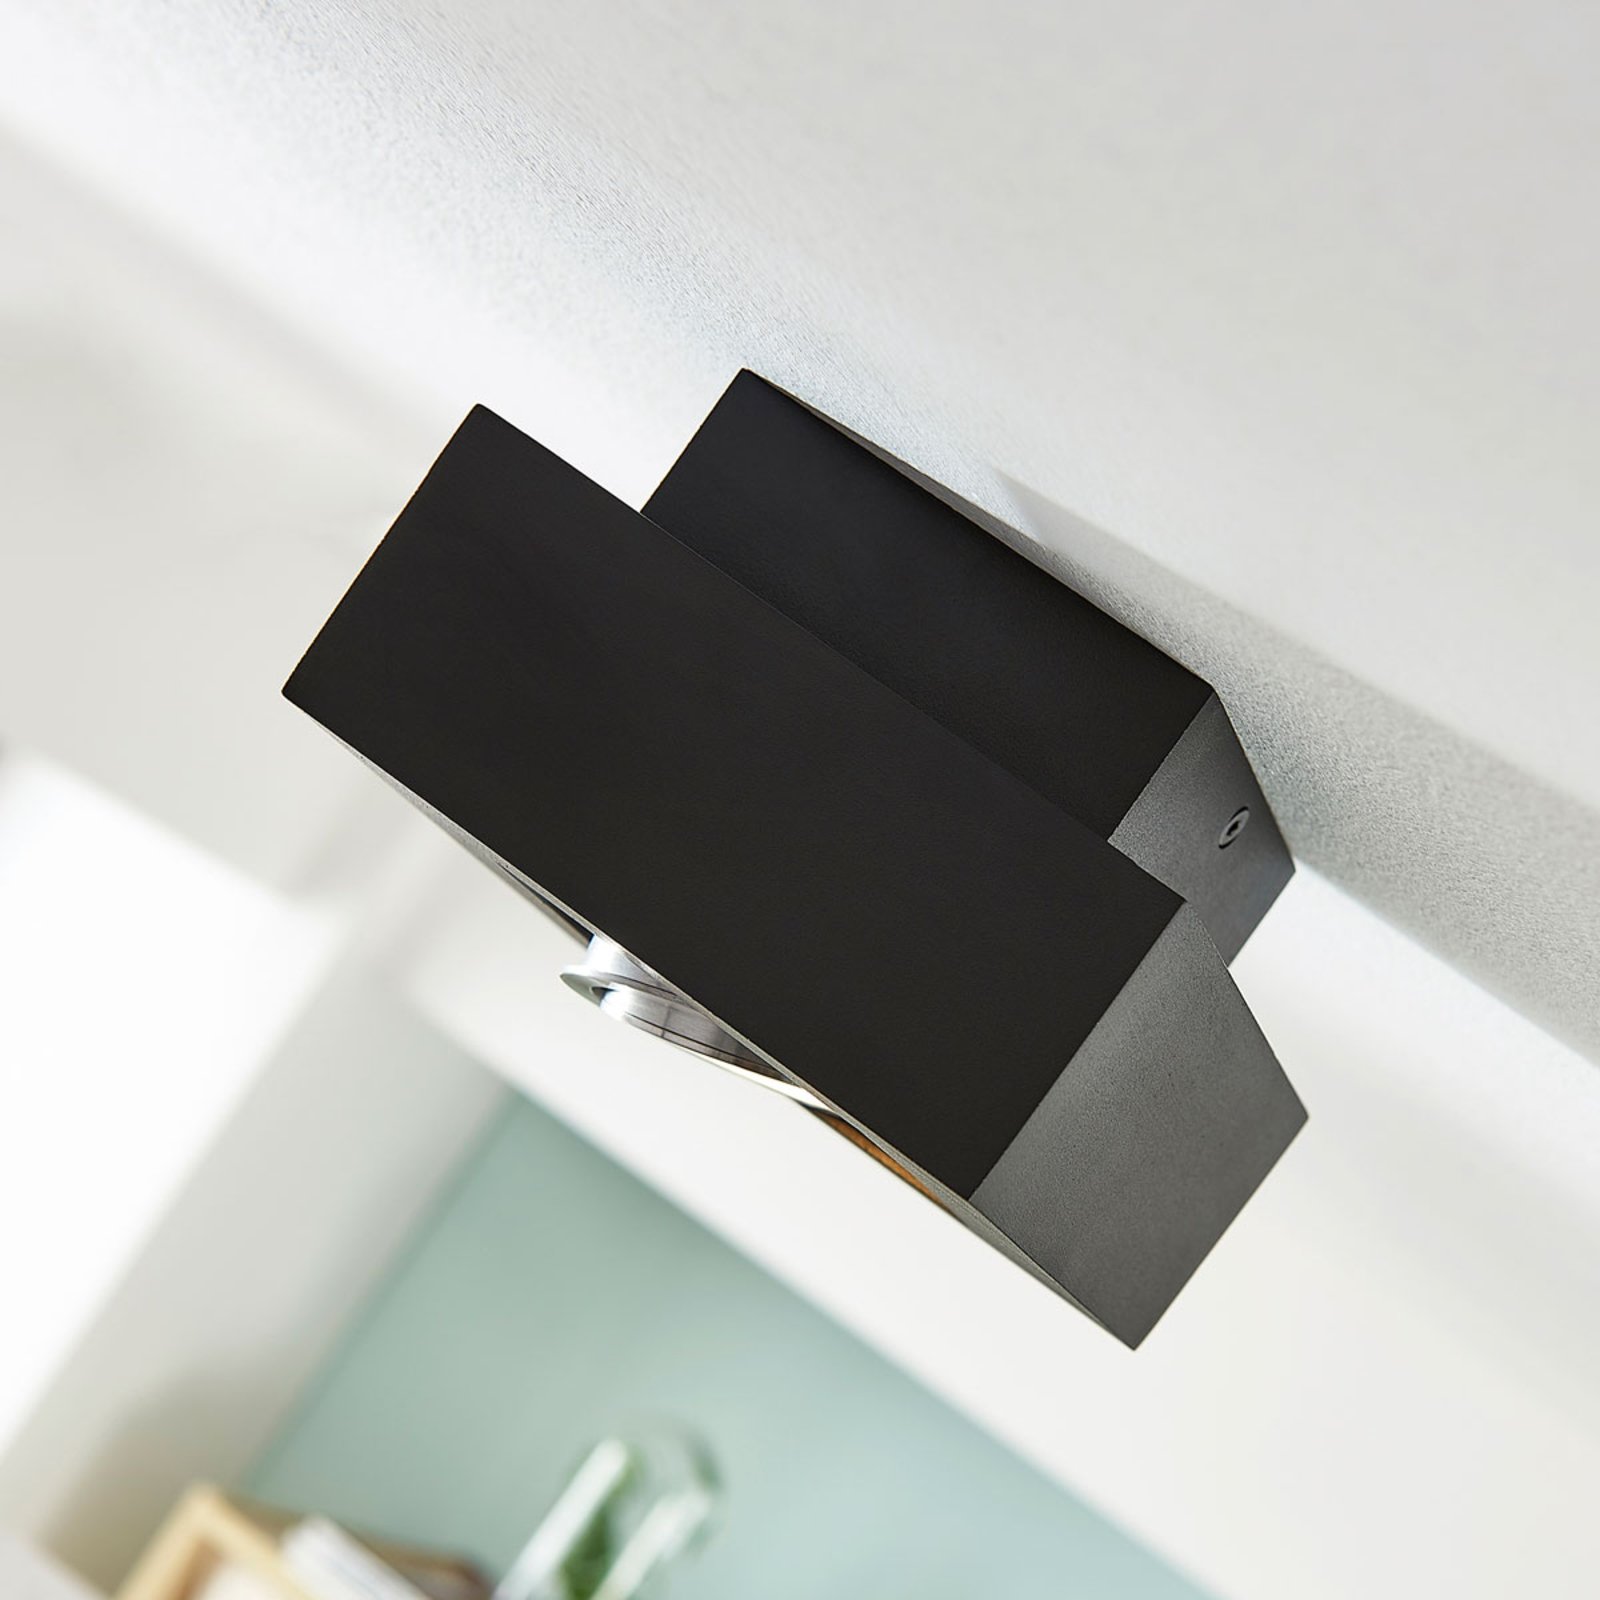 Vince LED ceiling light 14 x 14 cm in black